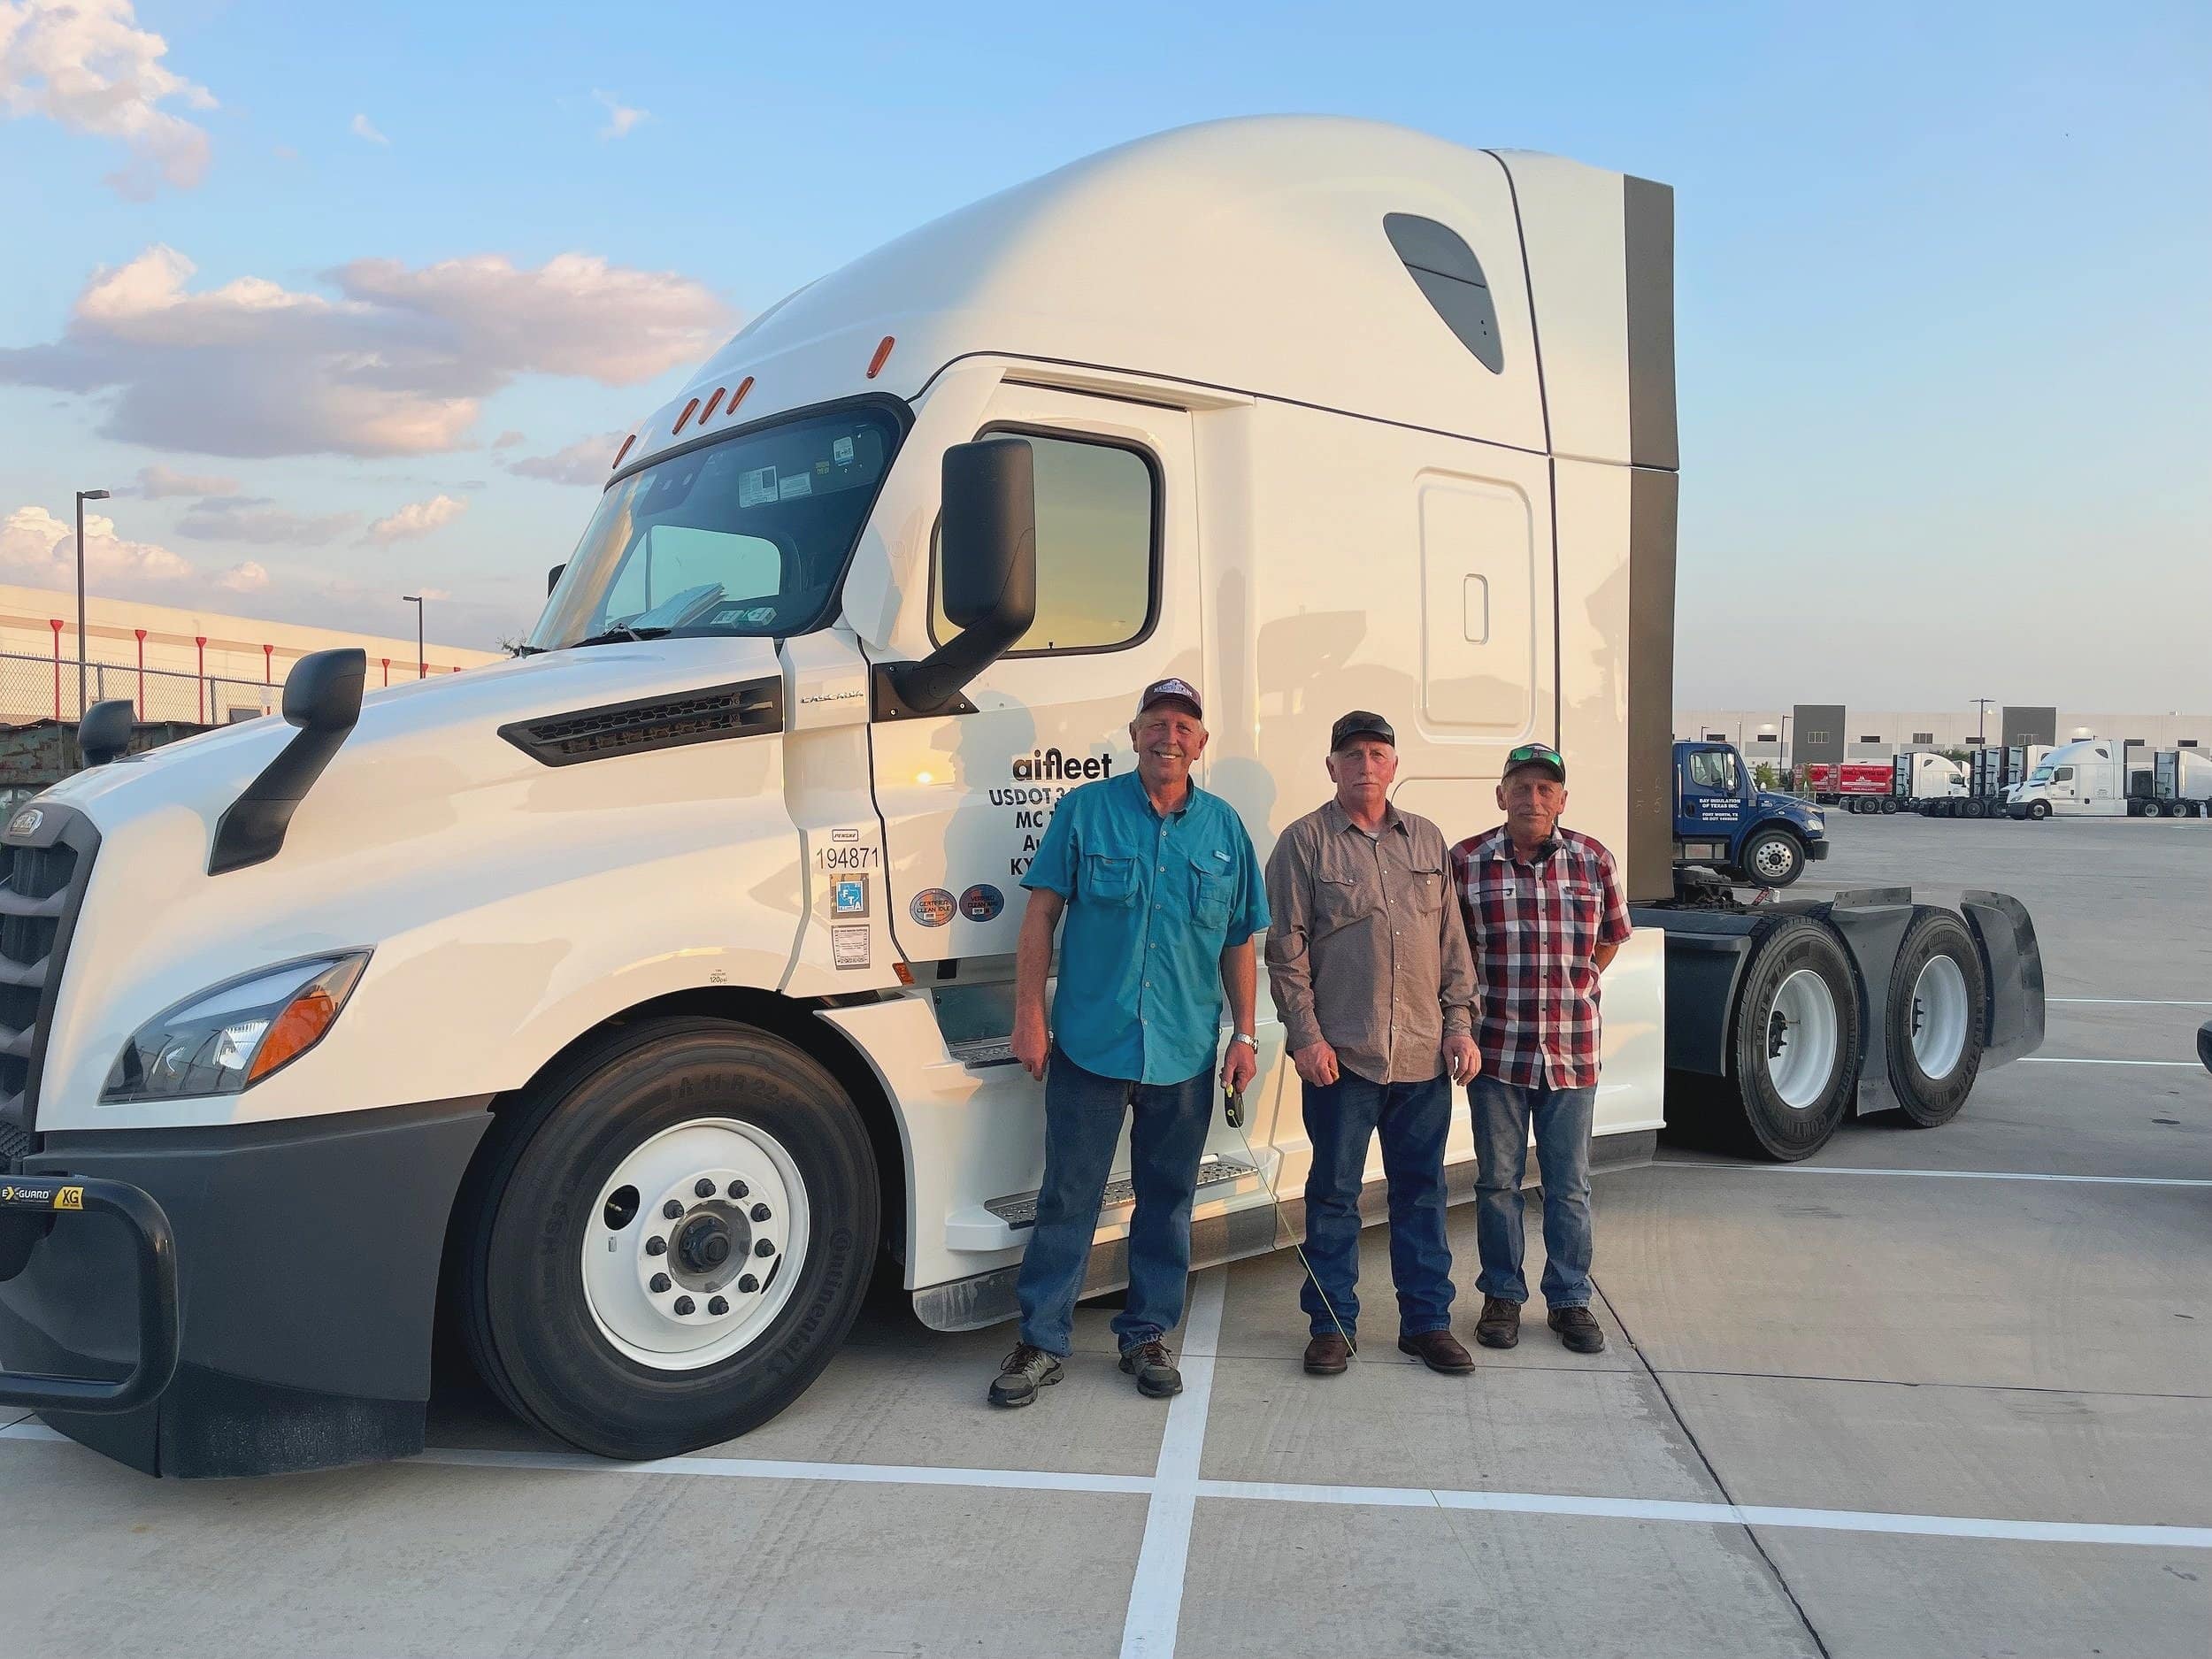 aifleet - Austin (TX 78701), US, trucking companies